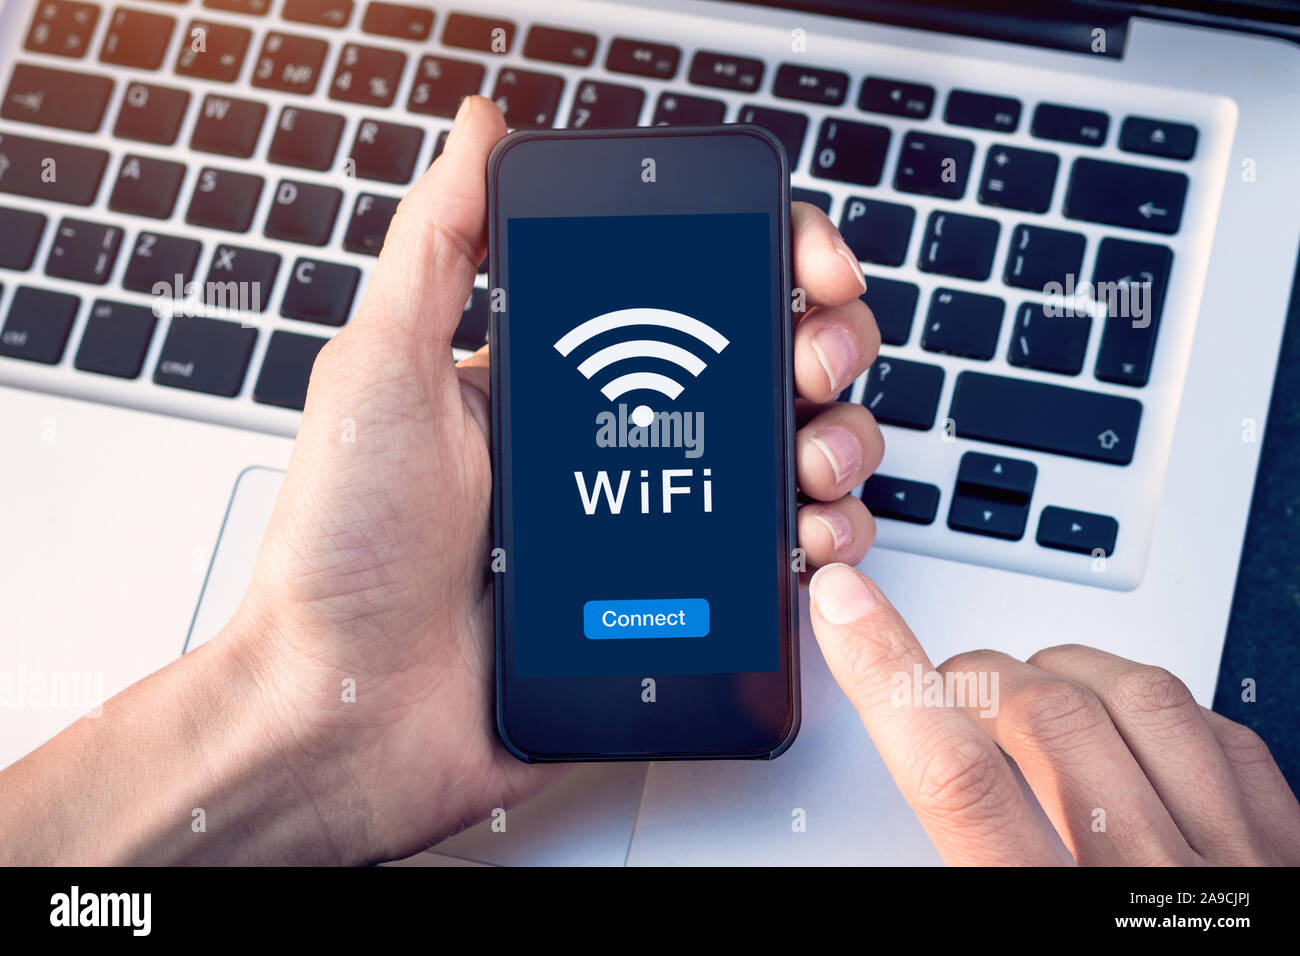 Connettersi al WiFi wireless network internet con lo smartphone presso la caffetteria o hotel con pulsante sul dispositivo mobile schermo, senza hotspot pubblico sicuro di acce Foto Stock